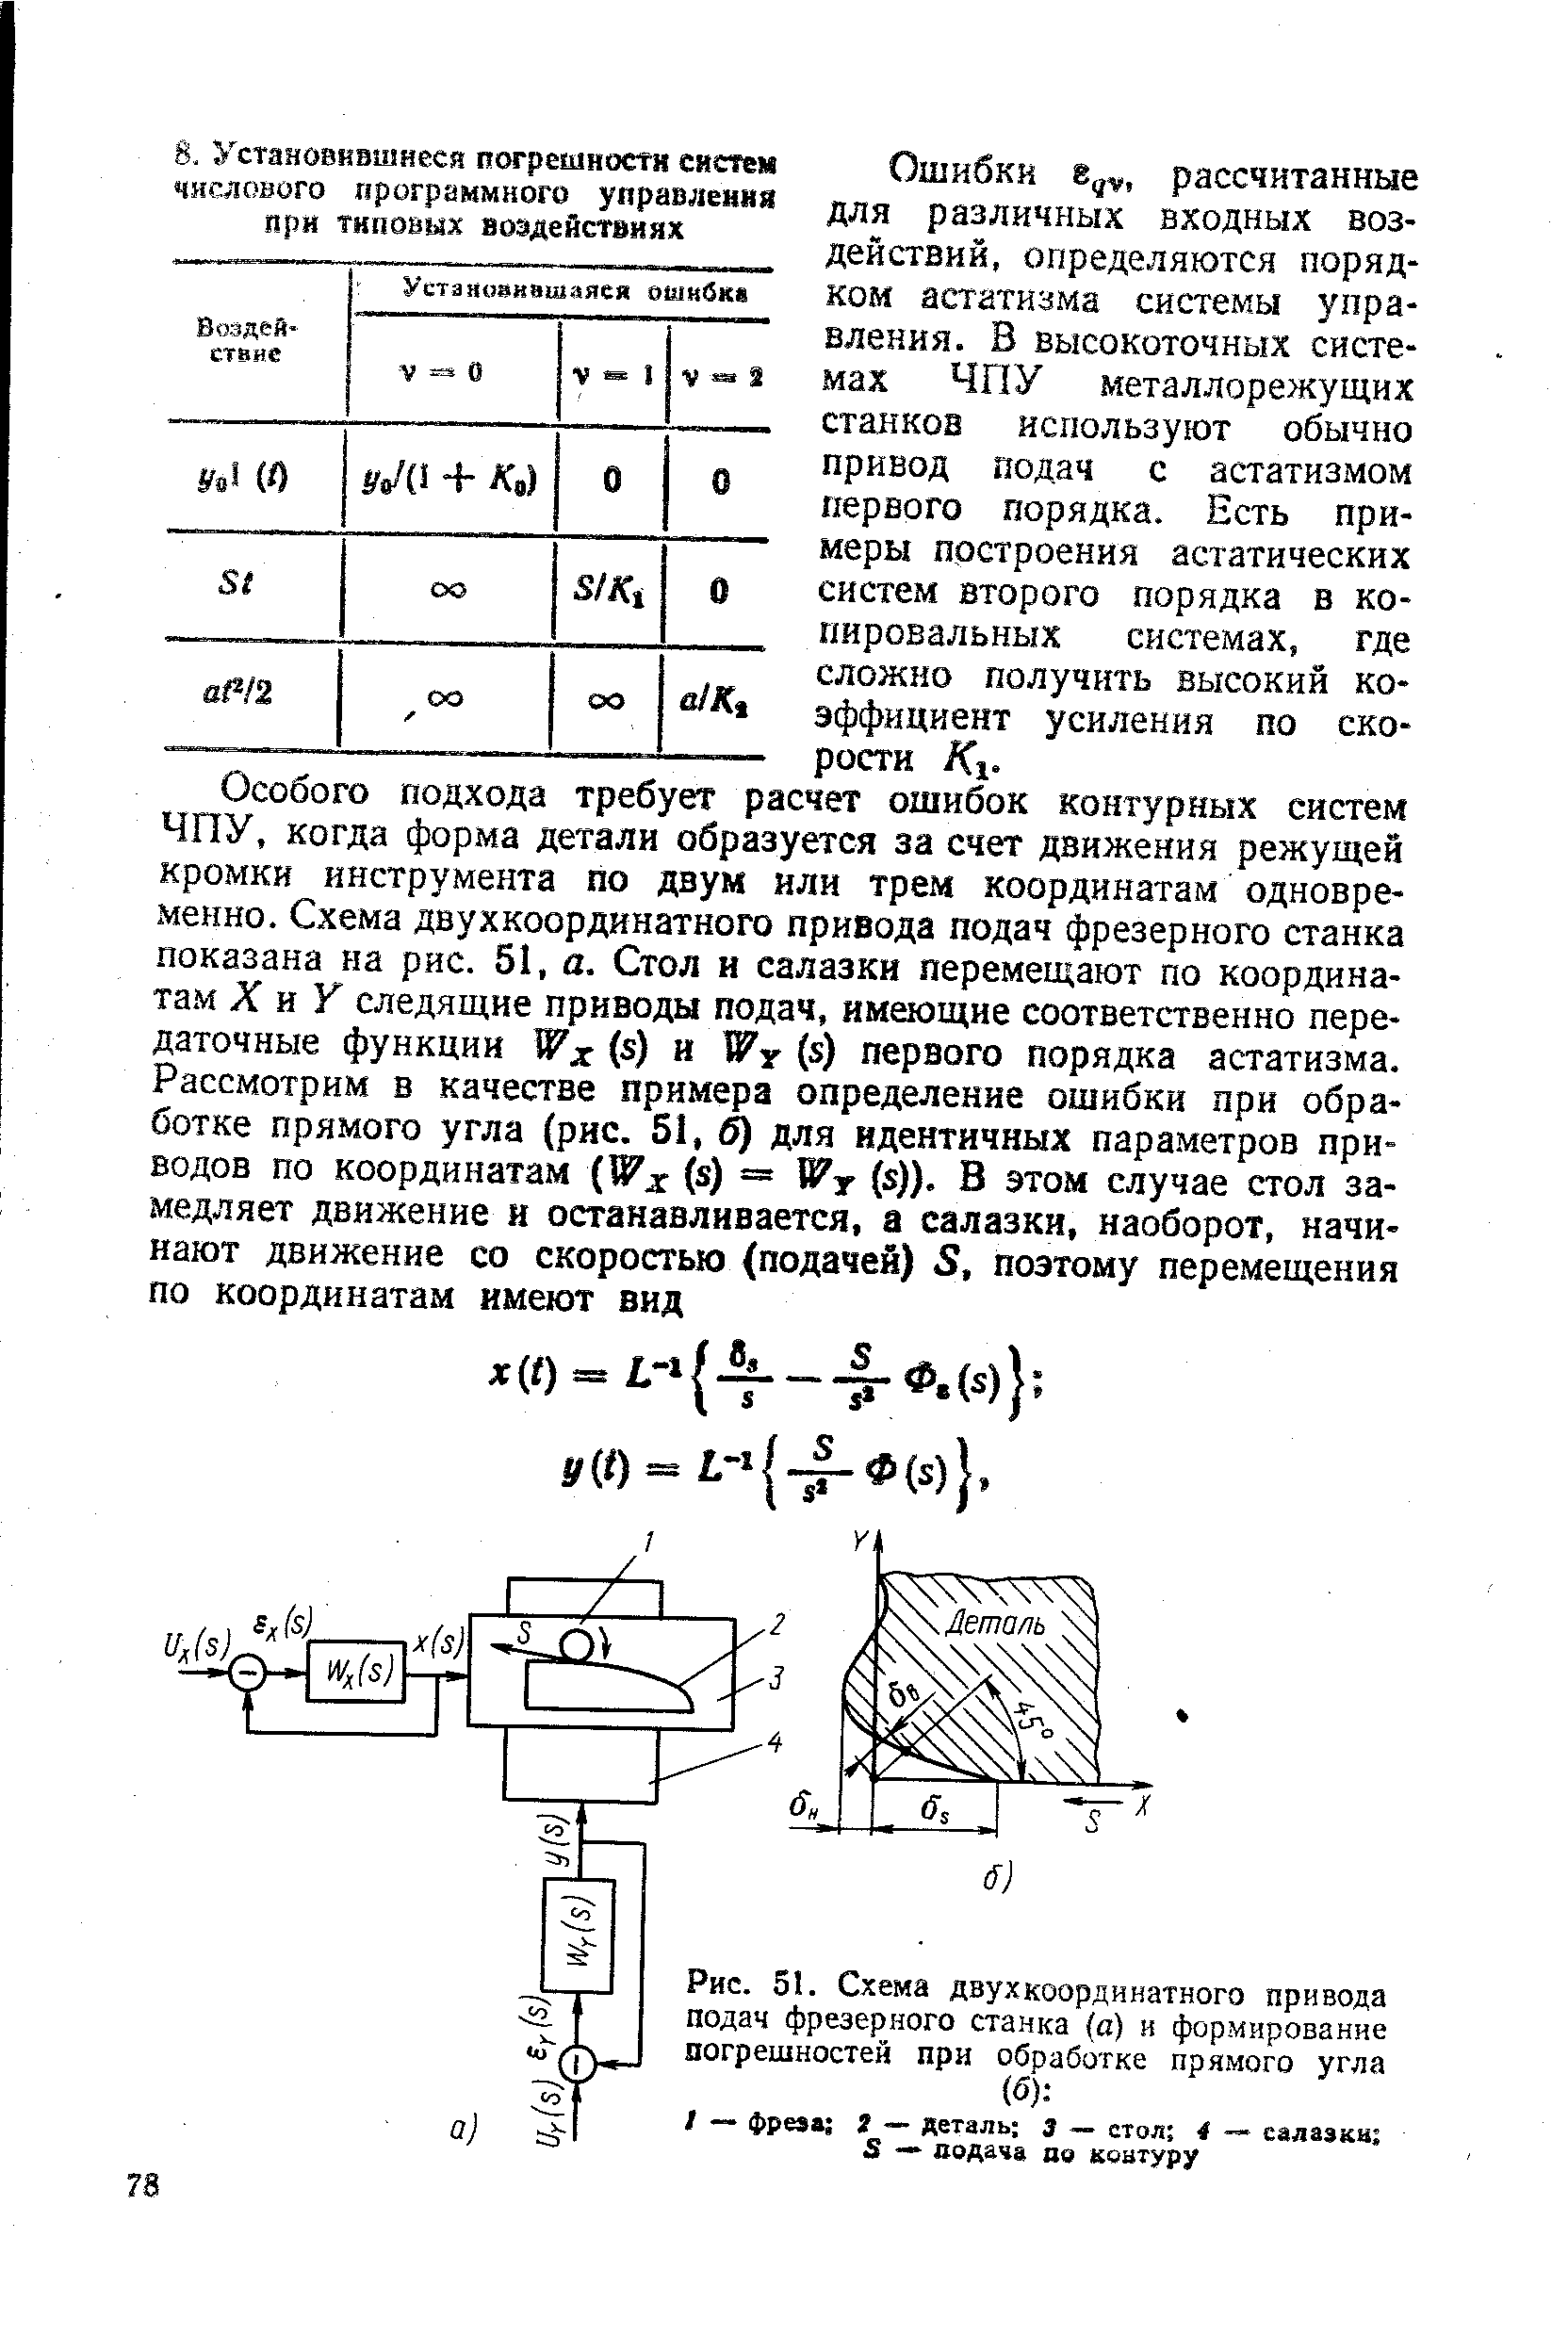 Рис. 51. Схема двухкоординатного привода подач фрезерного станка (а) и формирование погрешностей при обработке прямого угла (б) 
